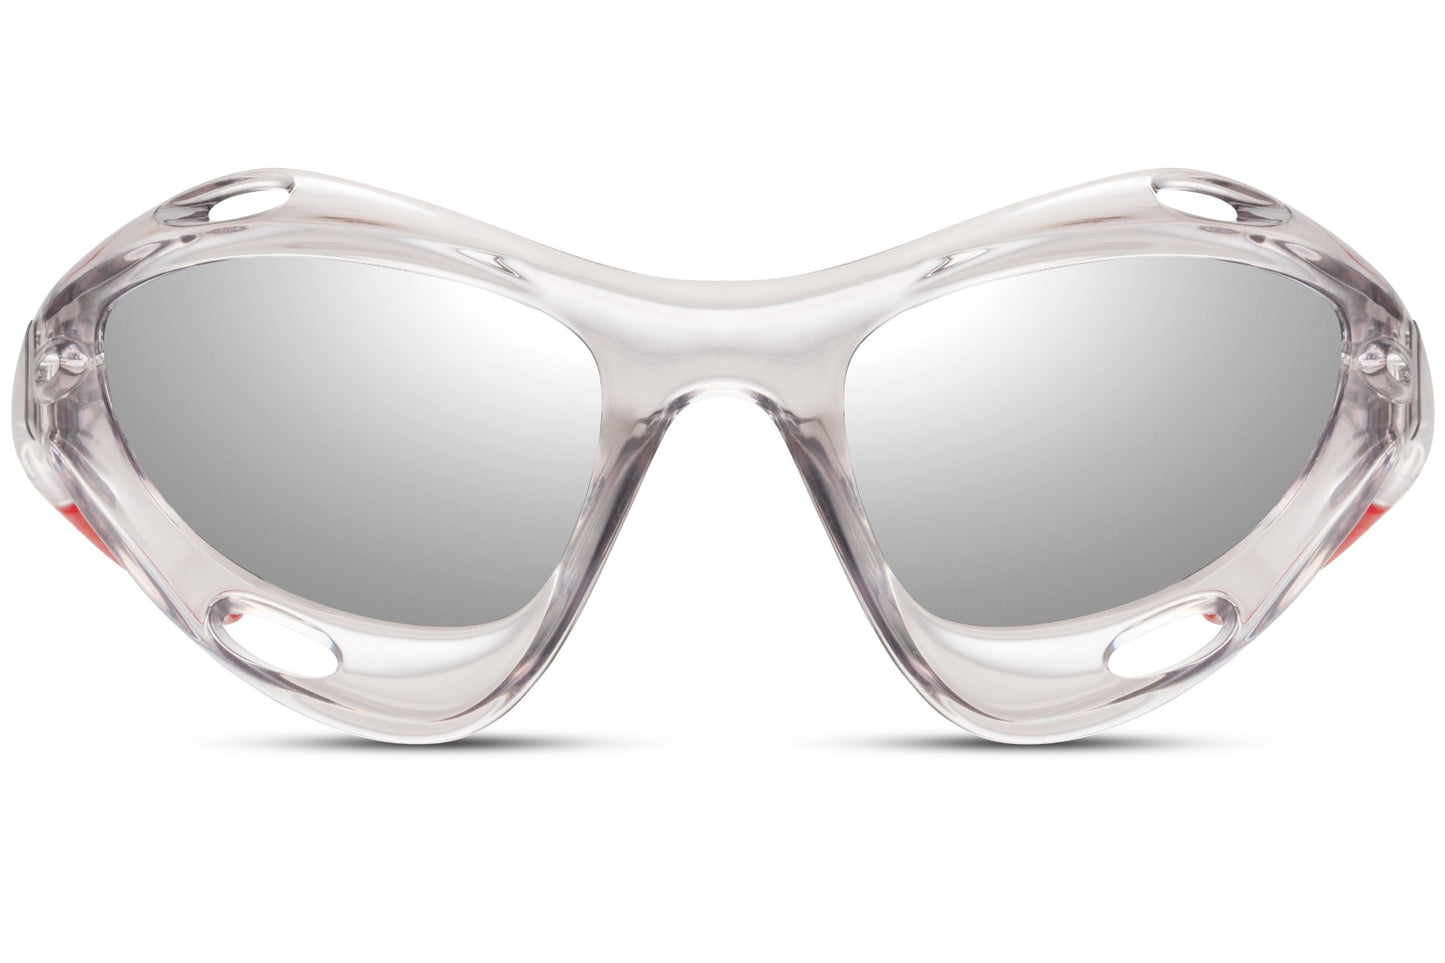 Black & White Visor Style Sports Sunglasses